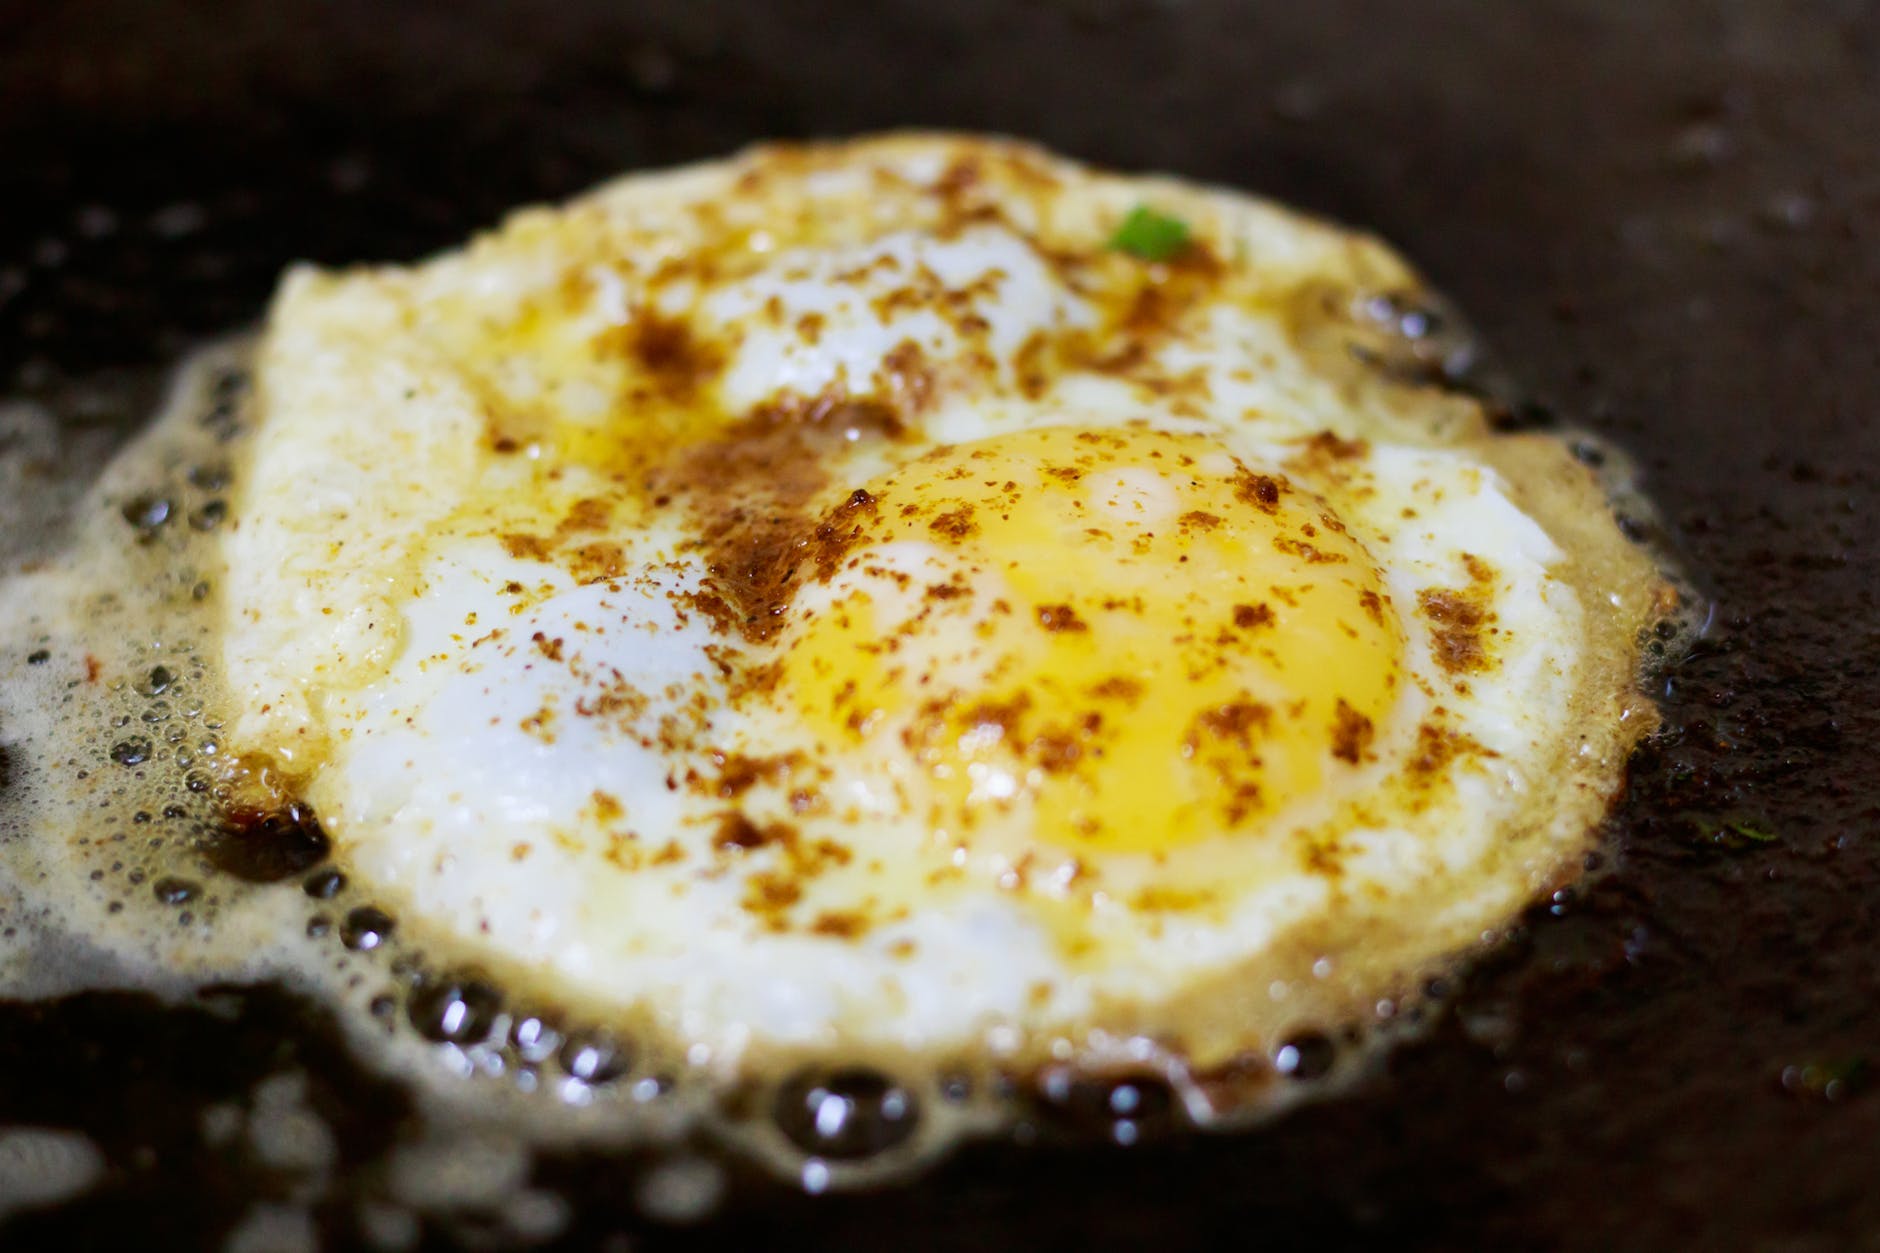 Fried egg with seasonings.